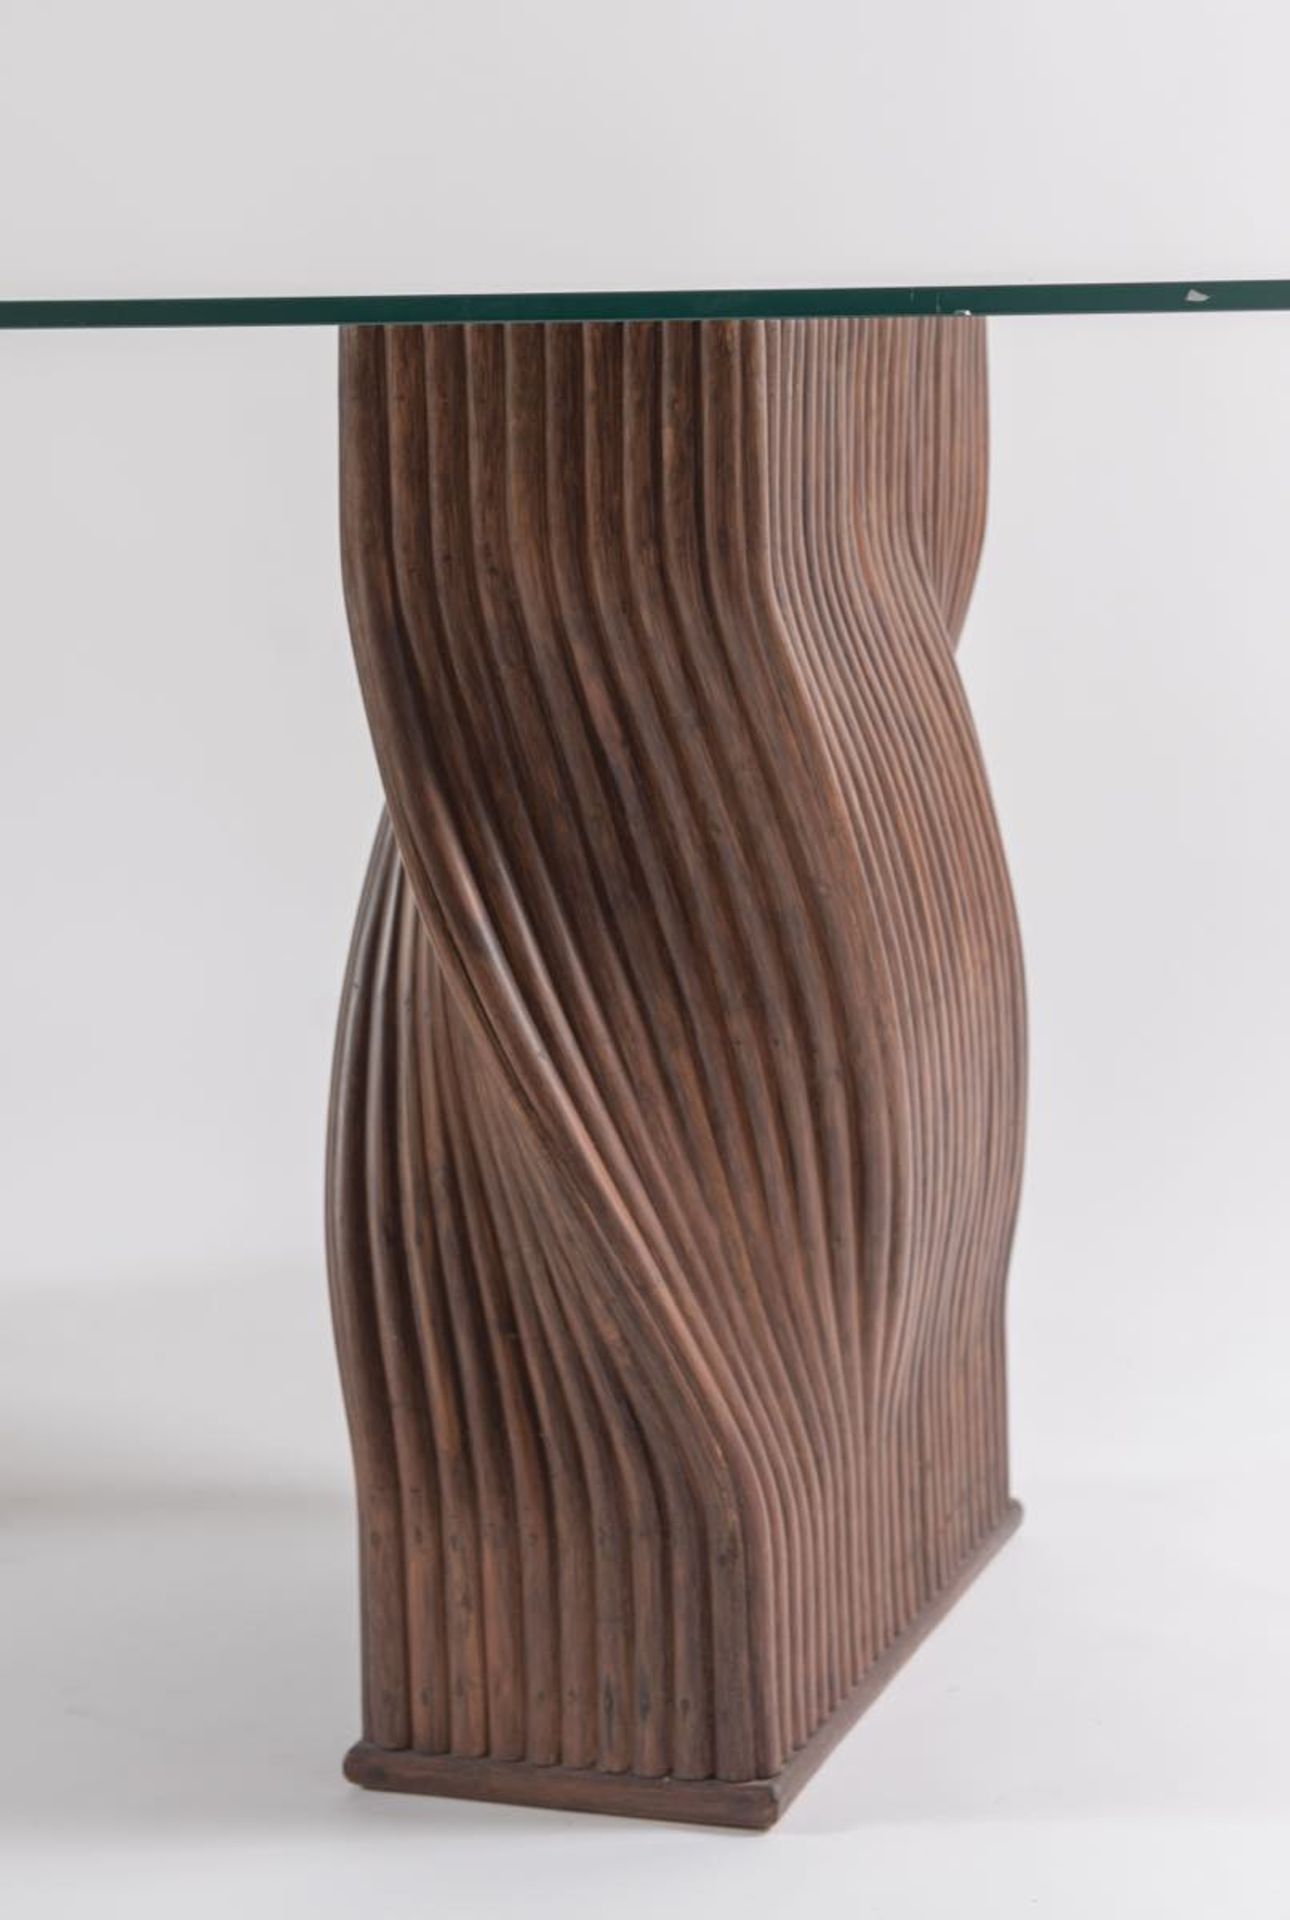 Coppia di basi per tavolo in bambù ritorto a tinta scura, Italia, Anni ‘70.H cm 70x60x21 - Bild 2 aus 2